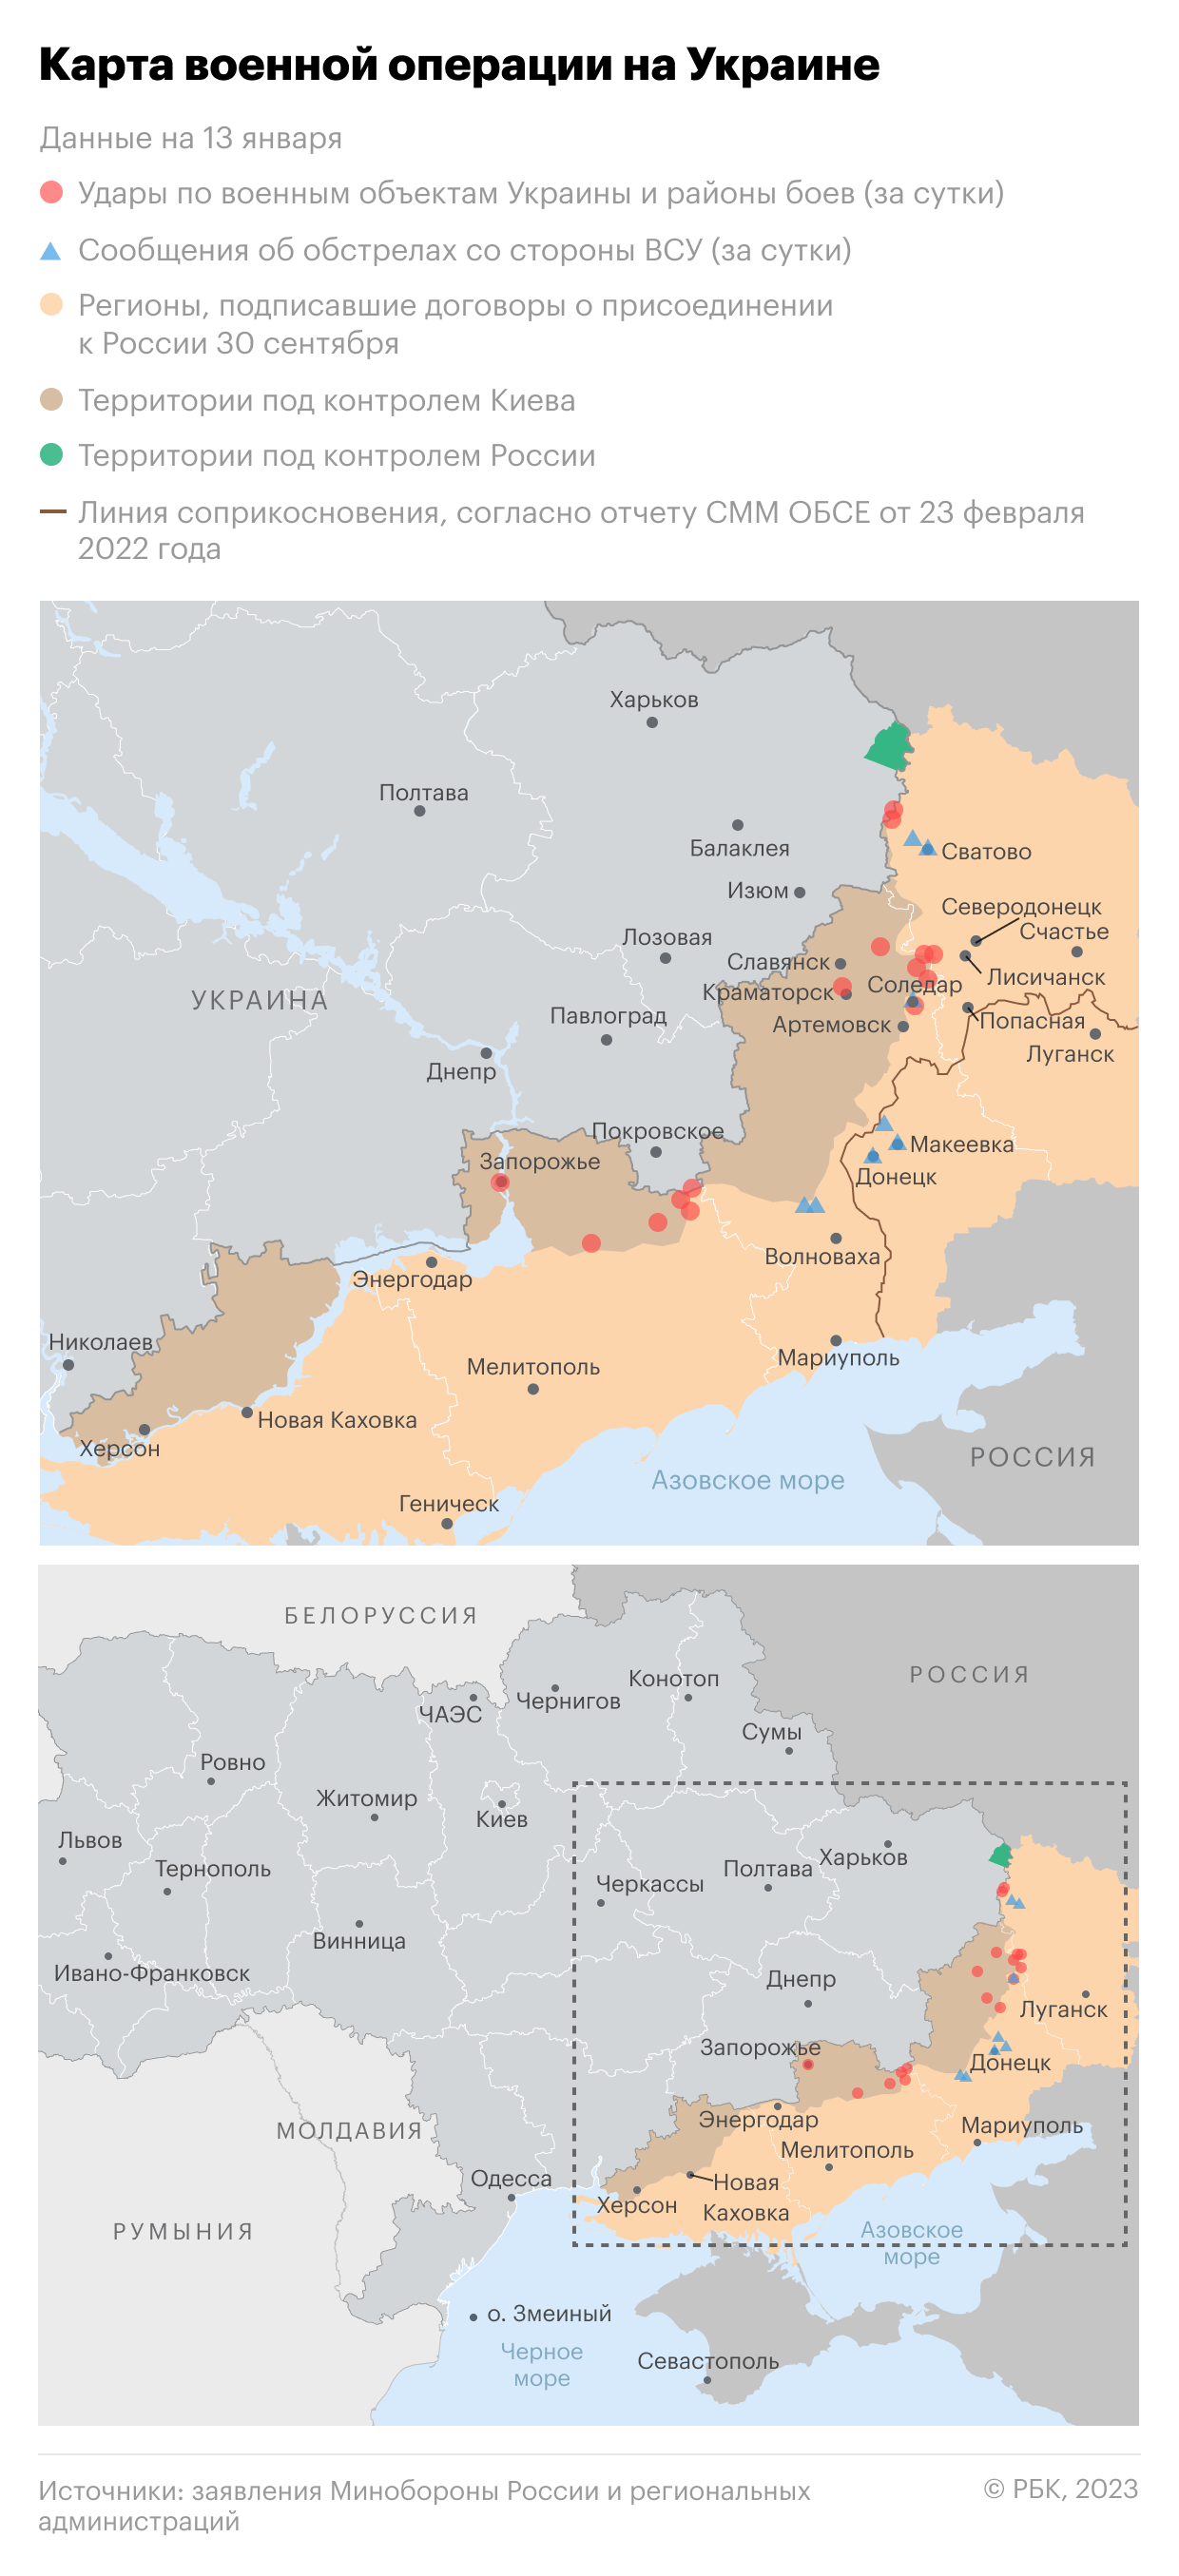 В 11 областях Украины ввели аварийные отключения электроэнергии"/>













